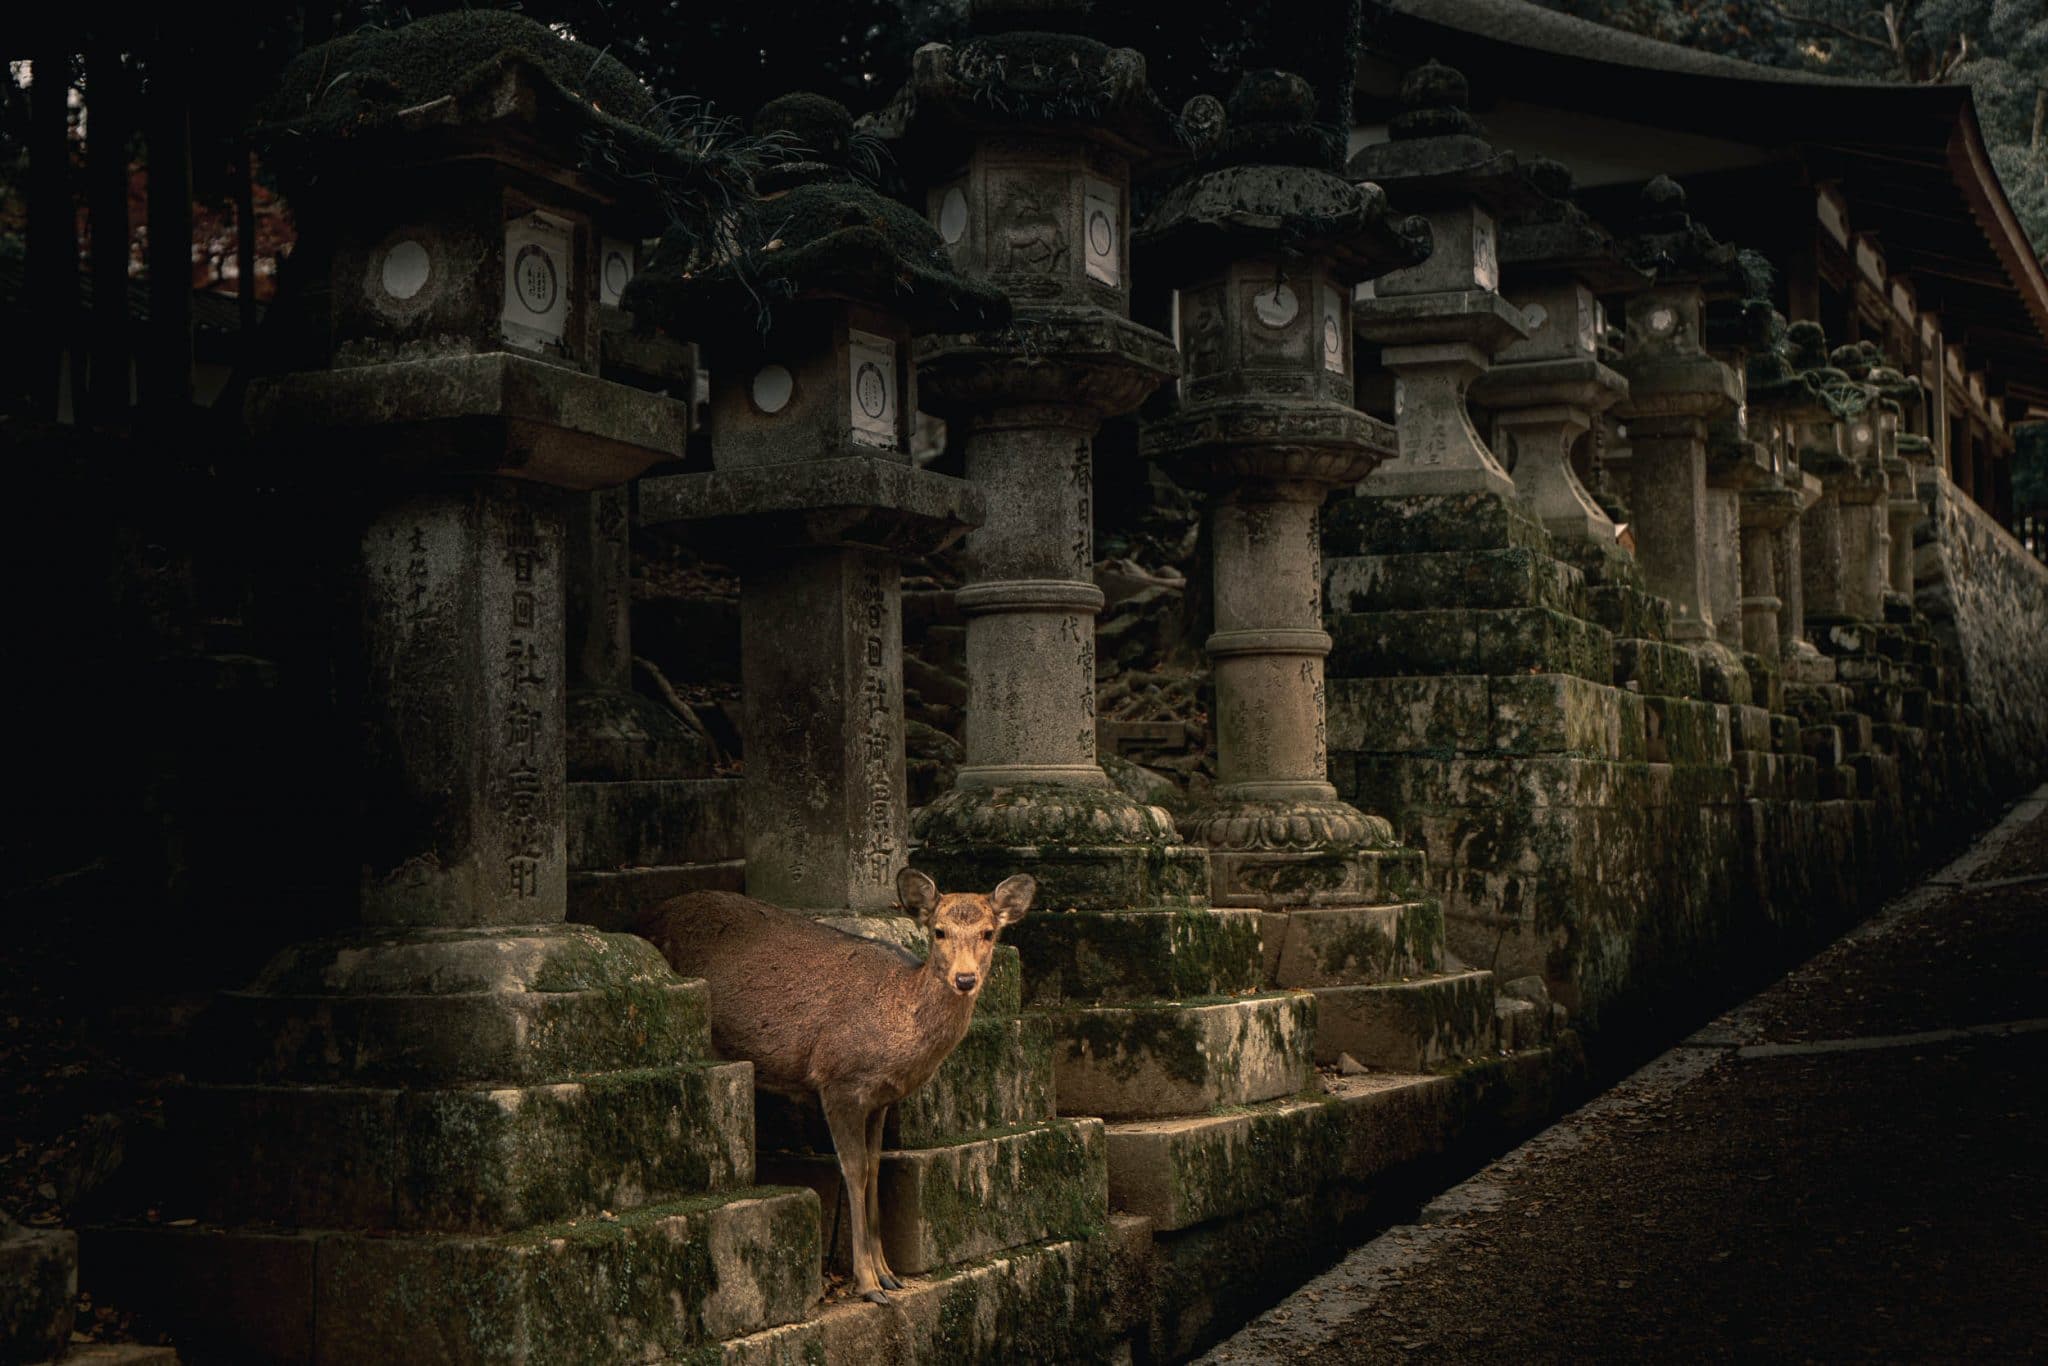 Image 5 jours dans la Préfecture de Nara | Que faire, que voir ? Mes recommandations et bonnes adresses